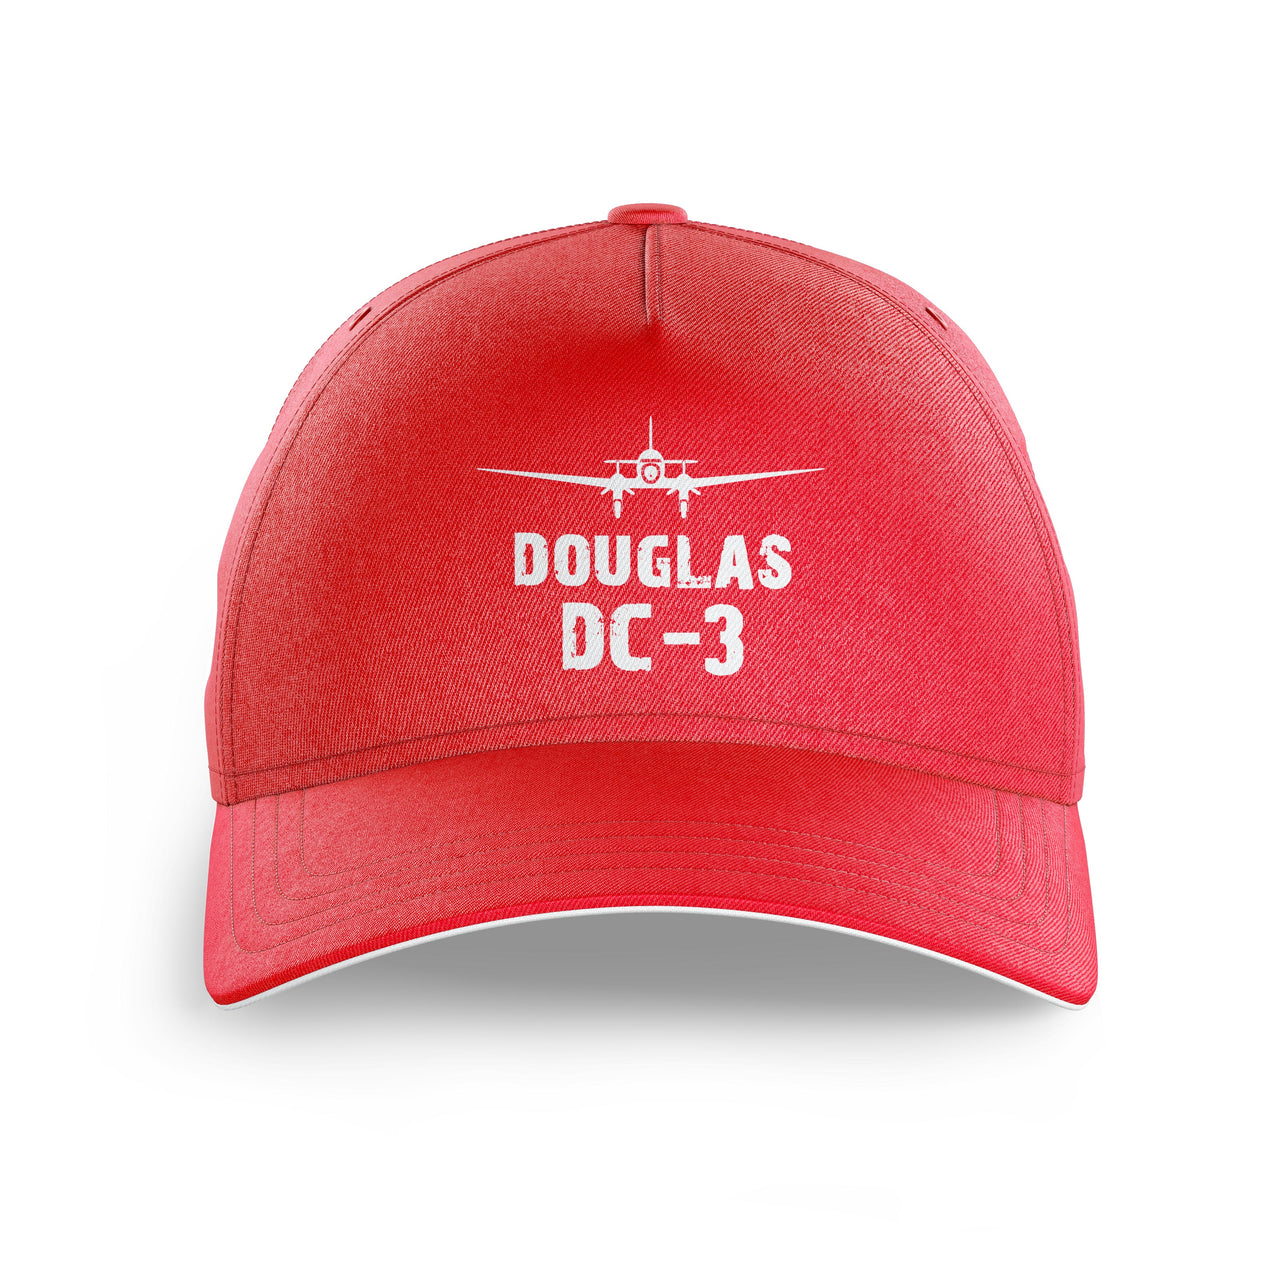 Douglas DC-3 & Plane Printed Hats